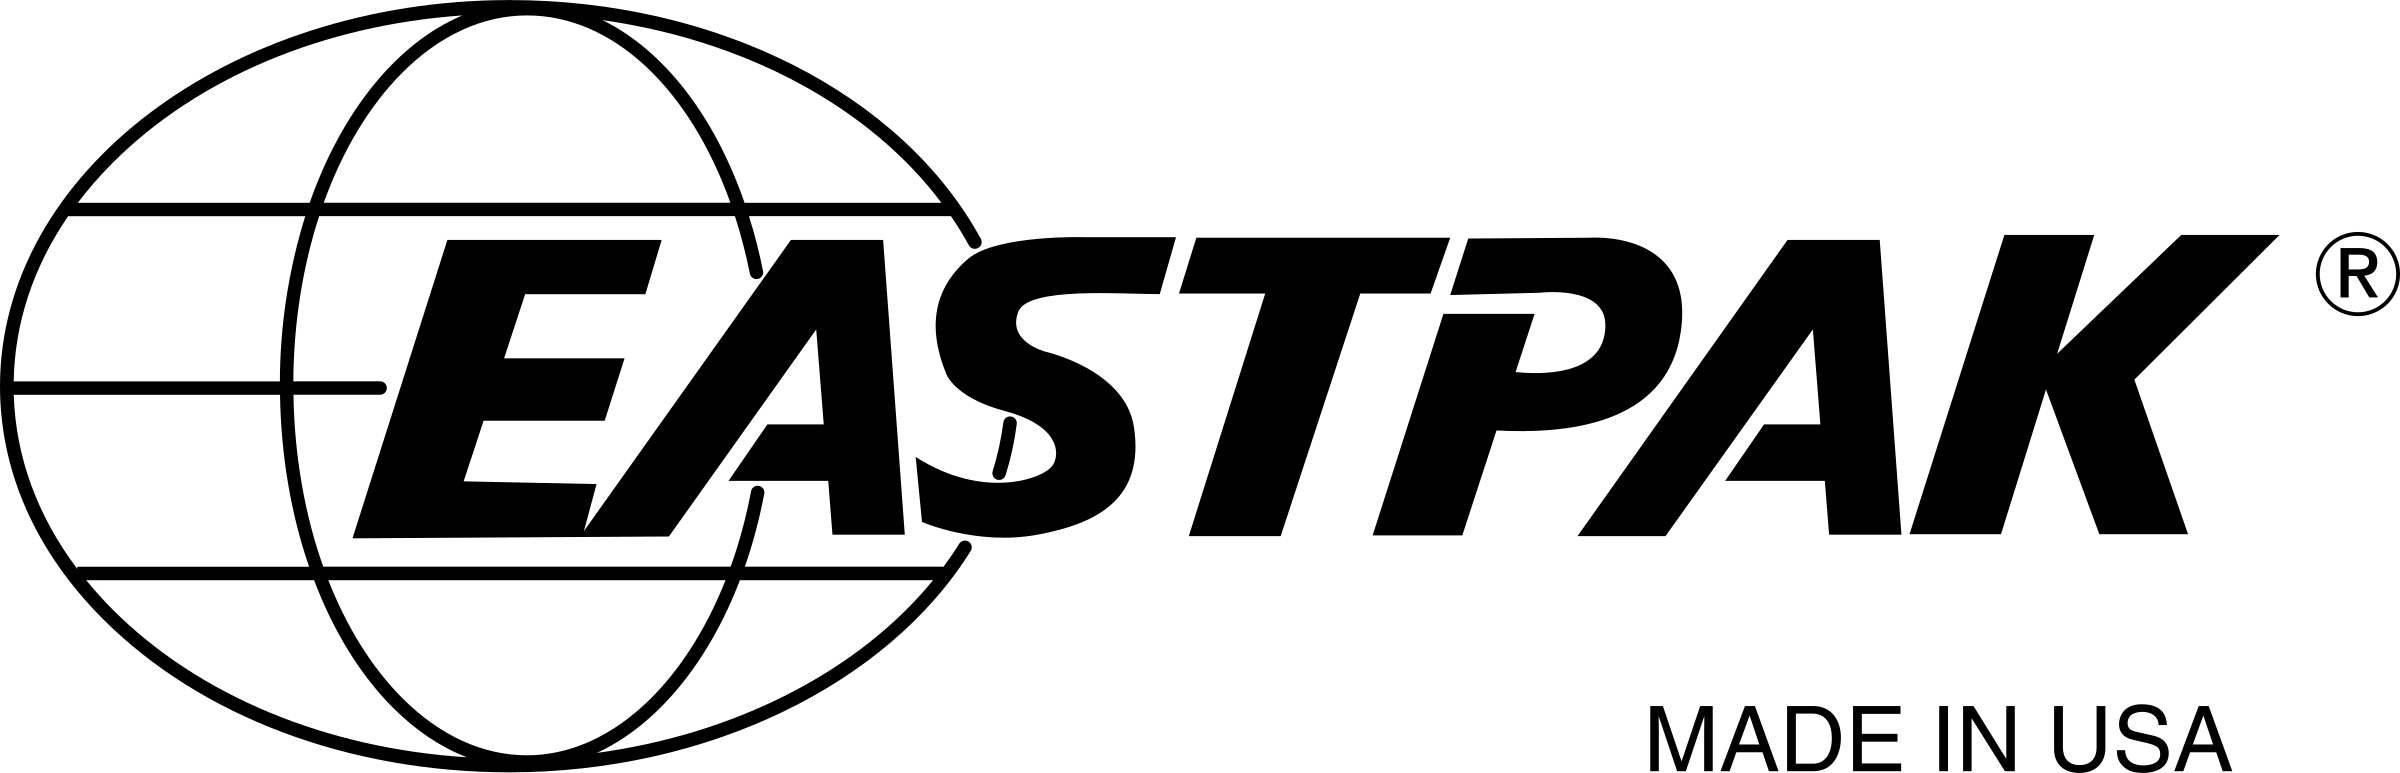 Eastpak Logo - Eastpak Logo PNG Transparent & SVG Vector - Freebie Supply